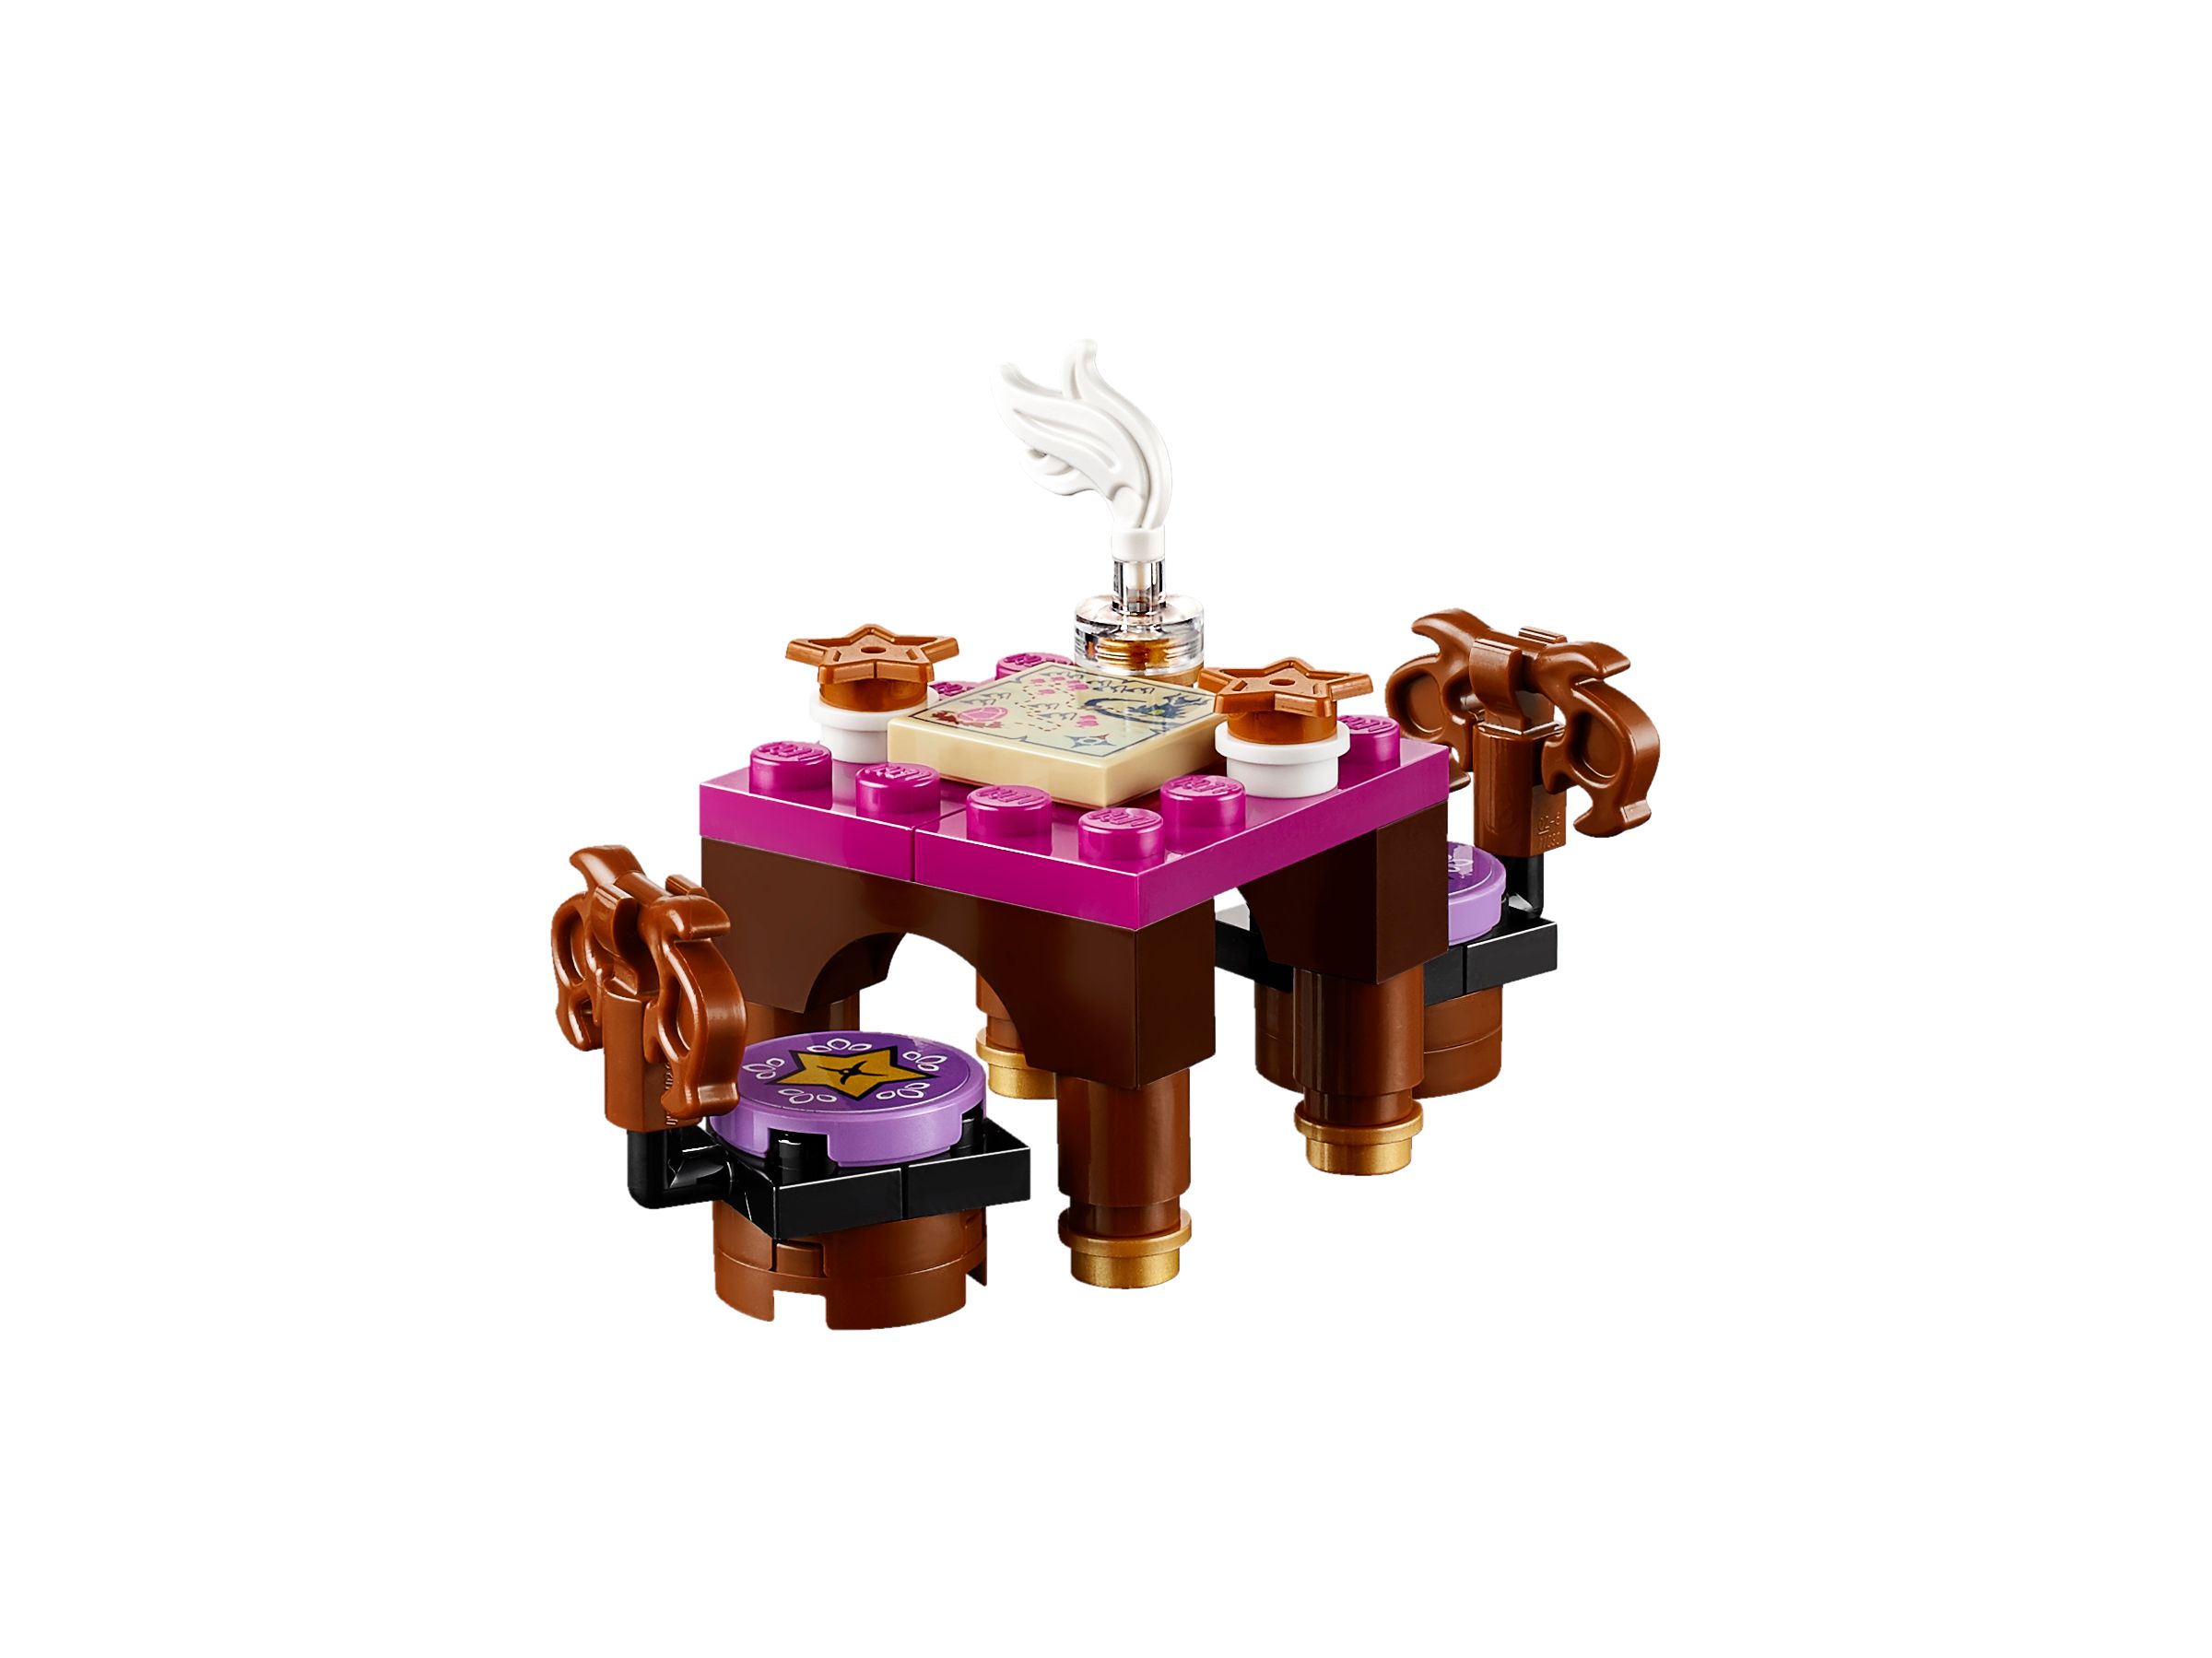 LEGO Elves 41174 Gasthaus Zum Sternenlicht LEGO_41174_alt4.jpg